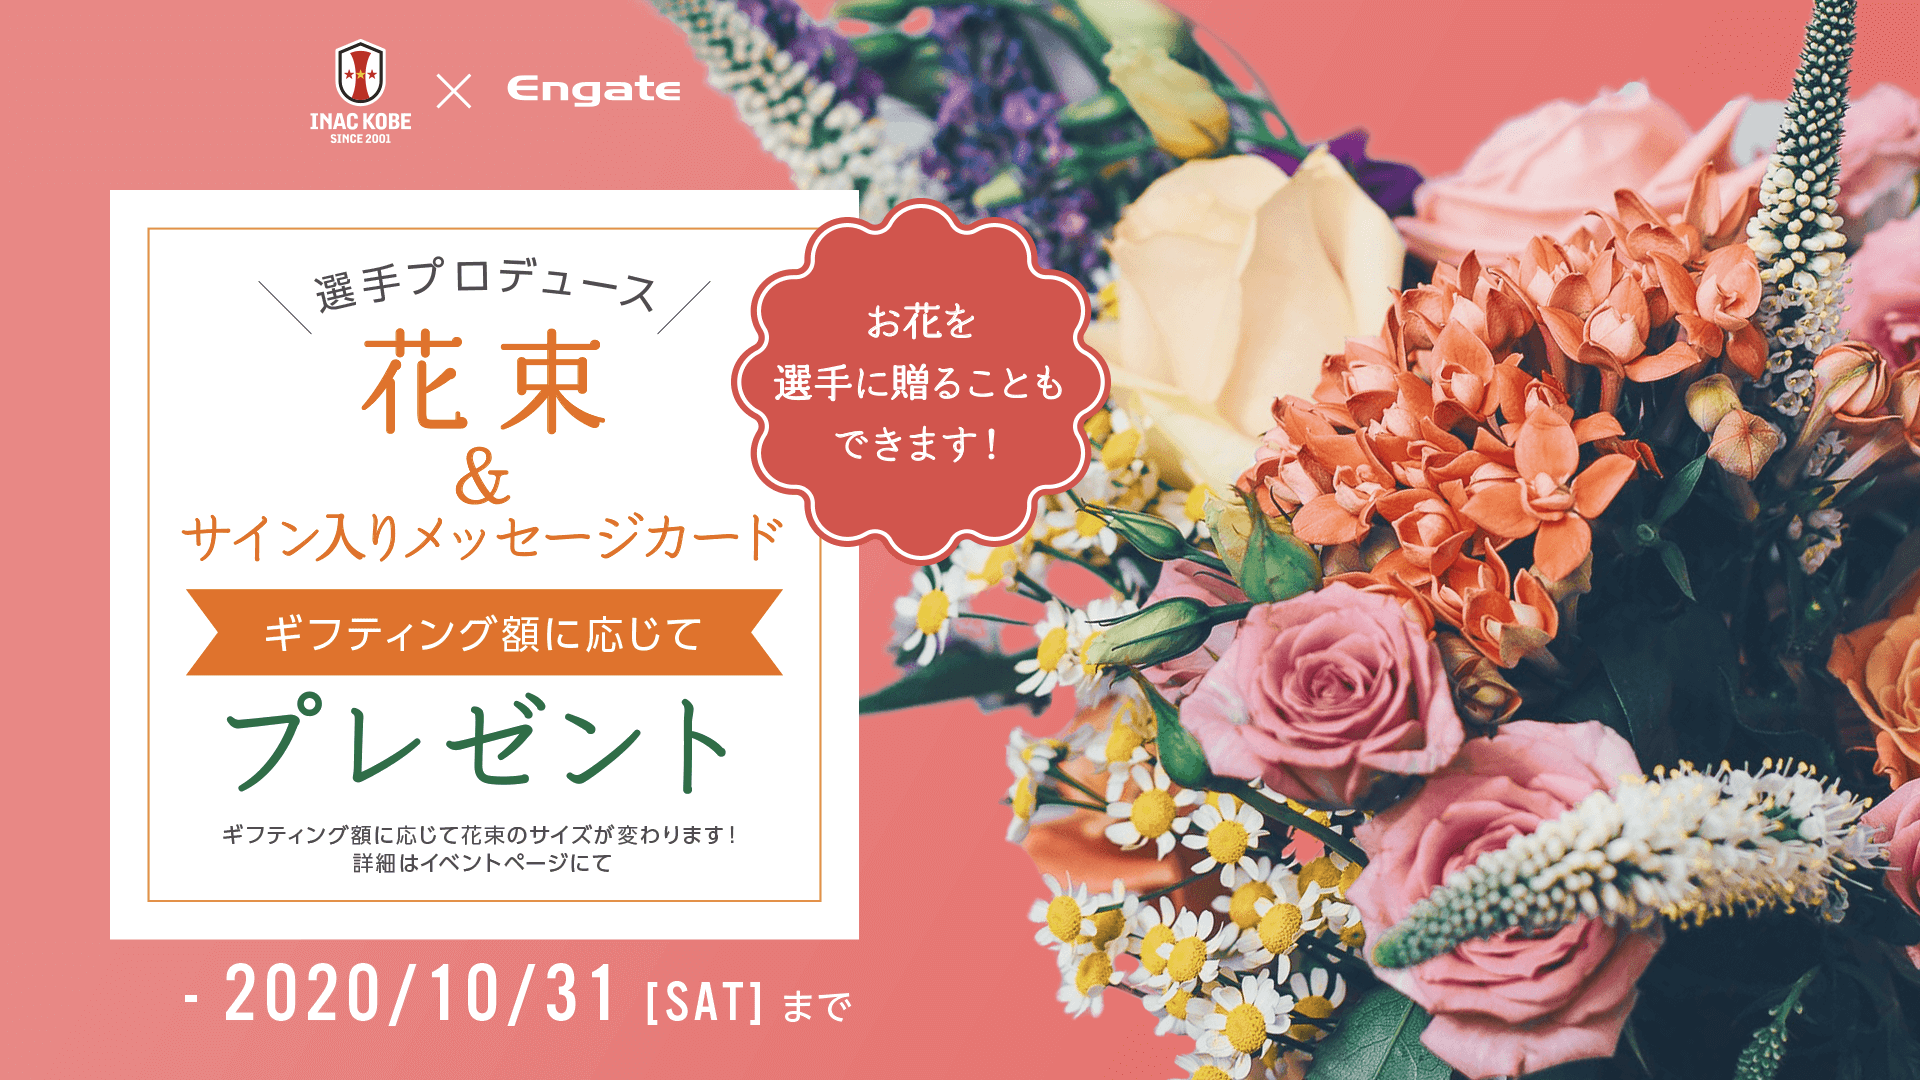 ニュース 選手にも贈れる 気持ちを花束にのせて届けようイベント開催 Inac神戸 レオネッサ